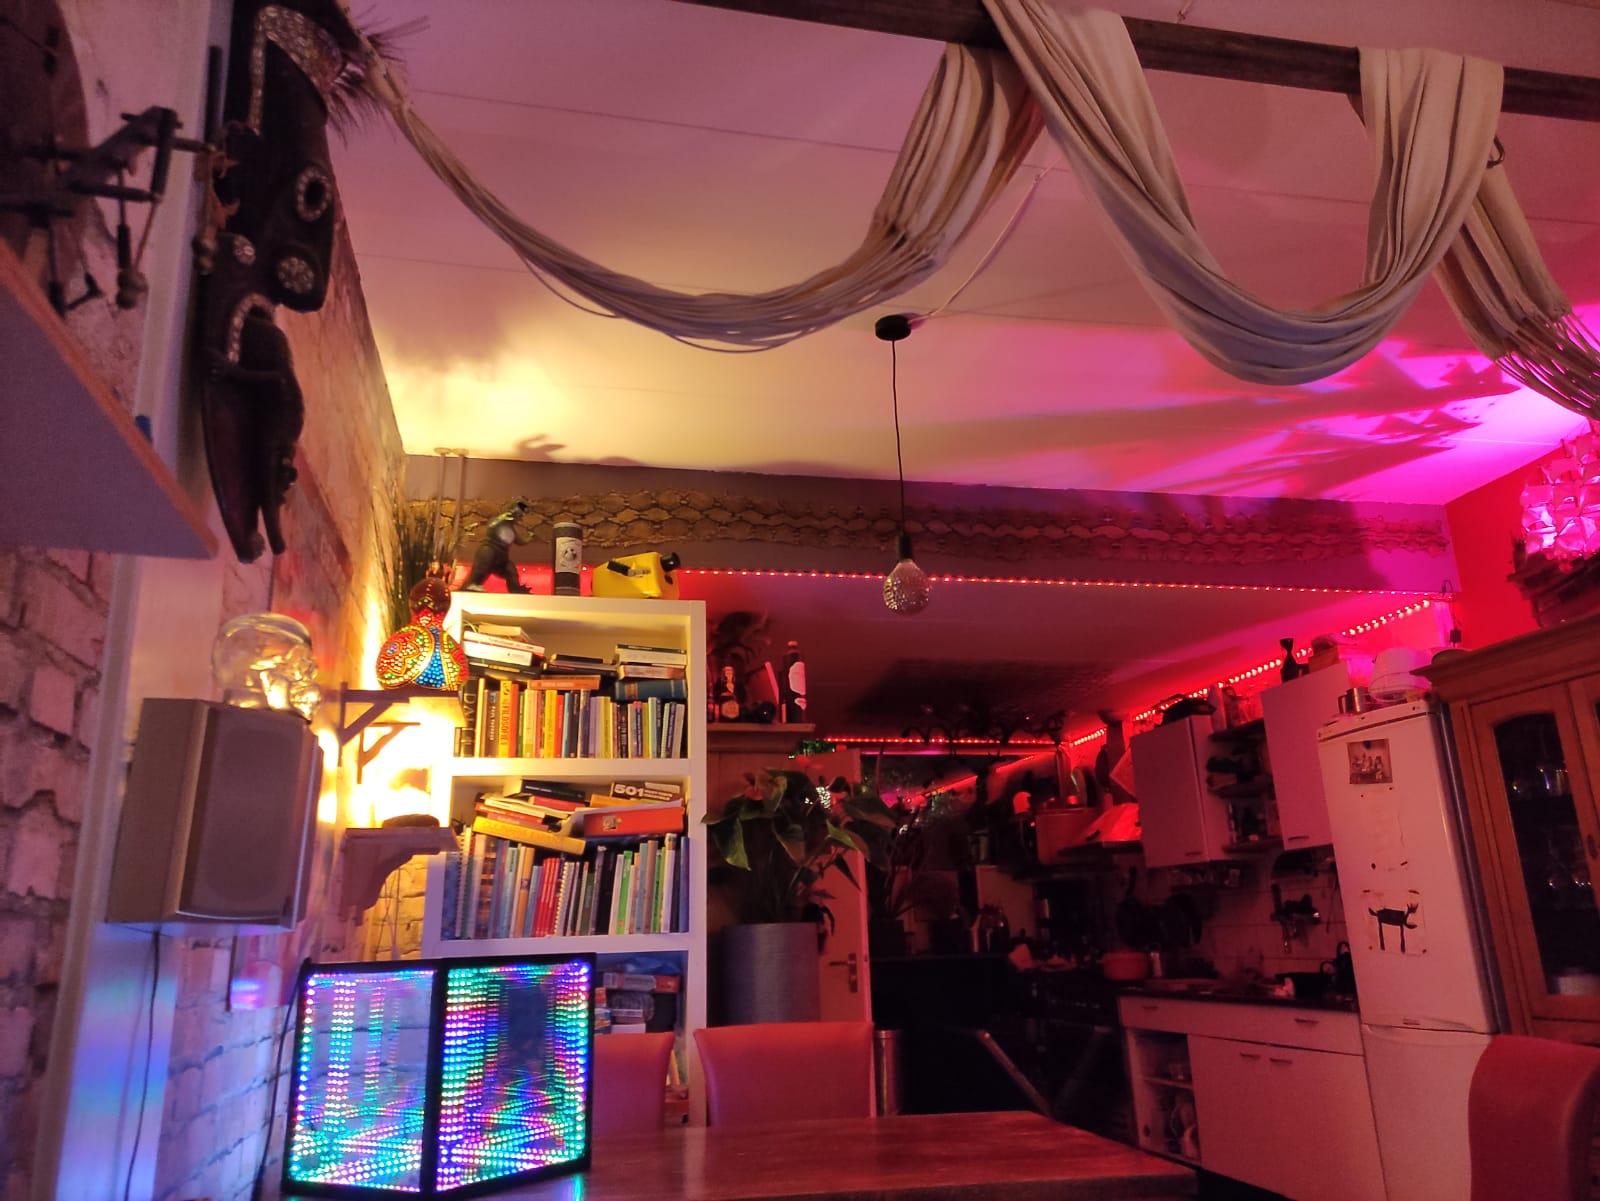 led wall lights in livingroom